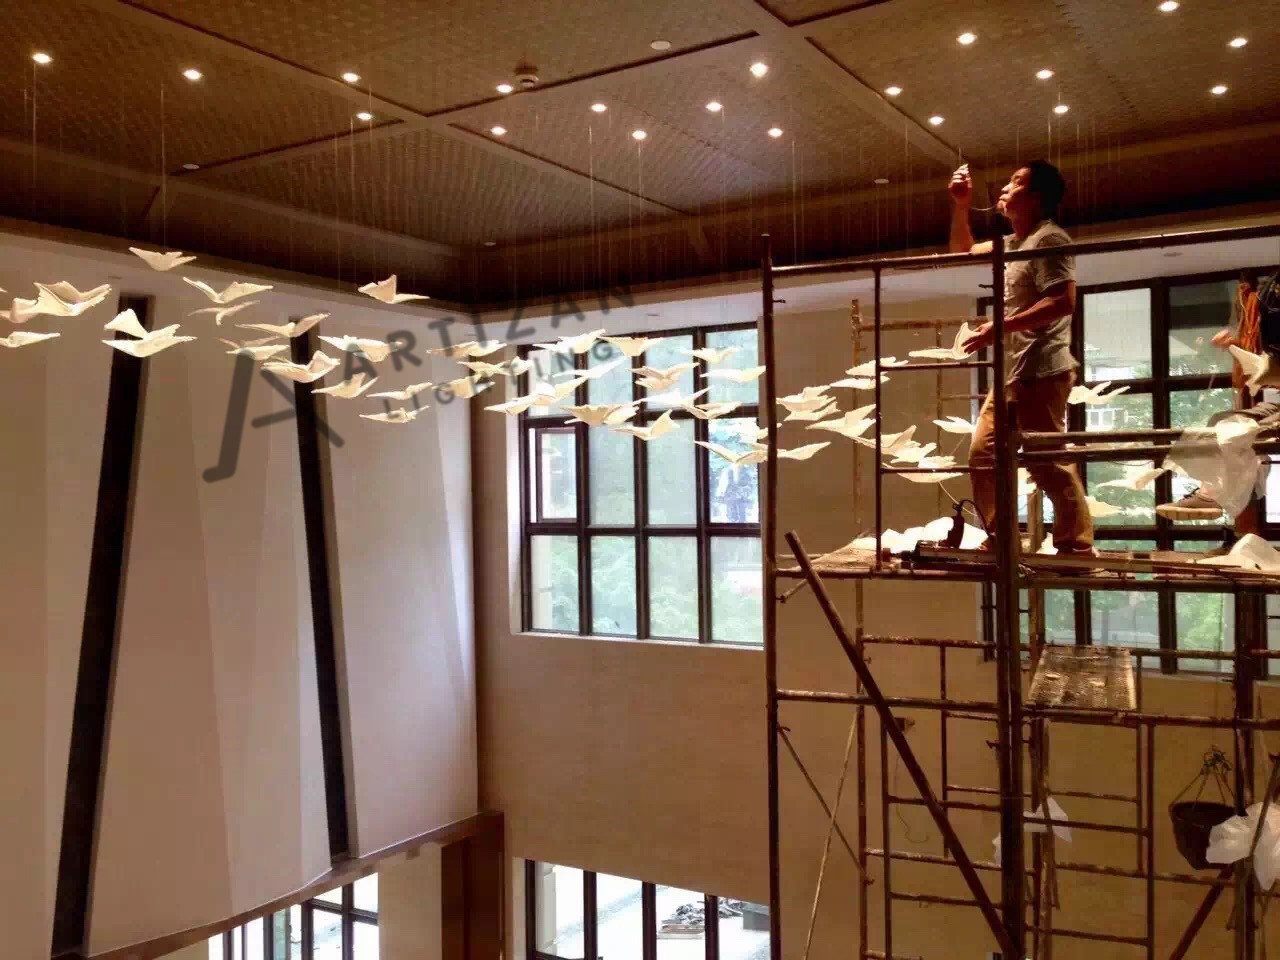 Art glass wings pendants lighting fixture design Chandeliers For indoor decorative